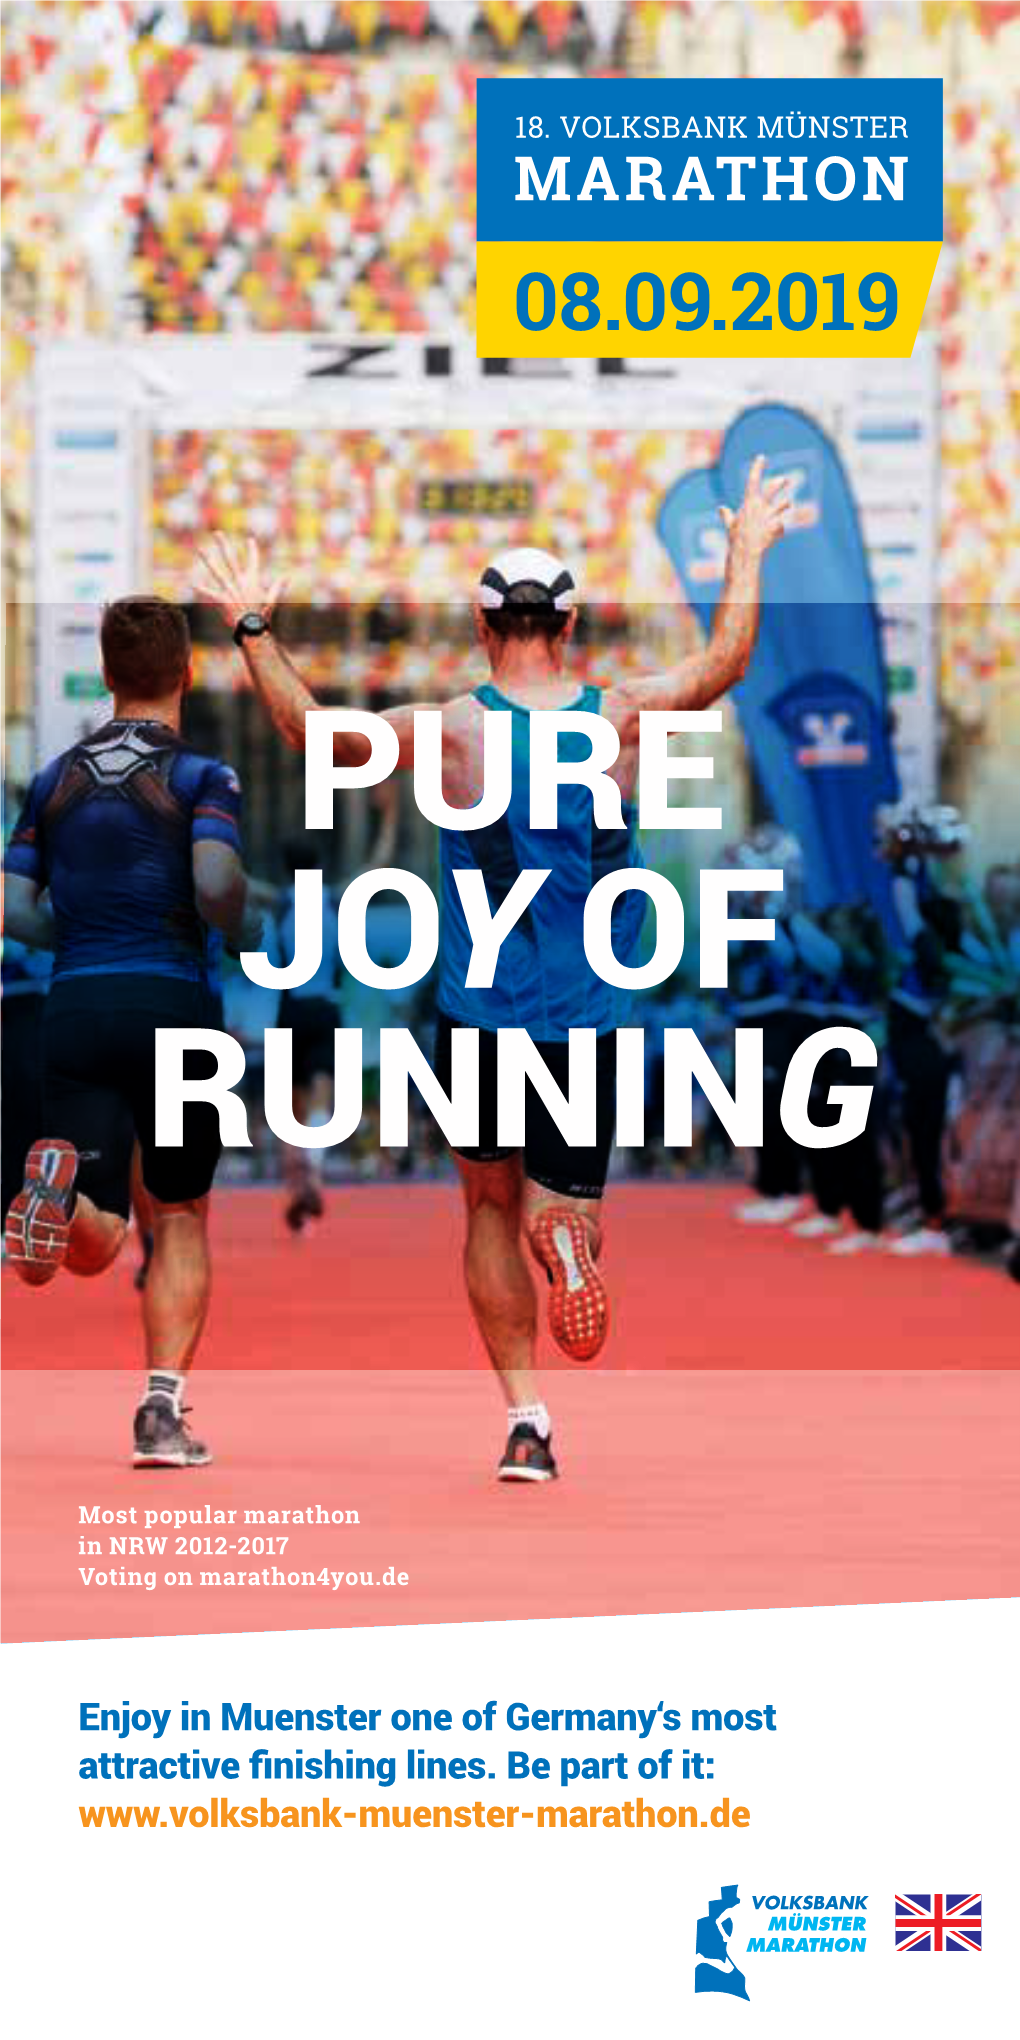 Pure Joy of Running